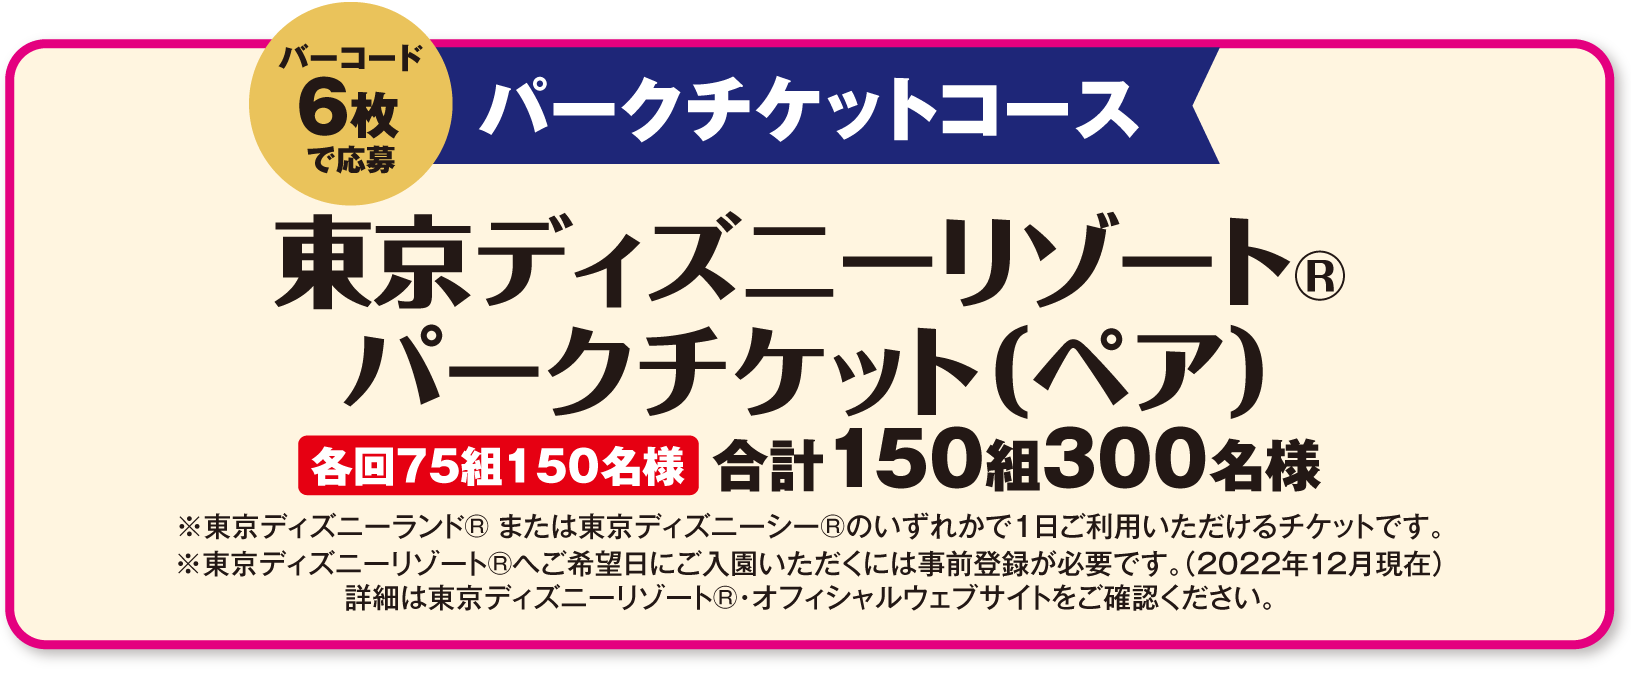 パークチケットコース バーコード6枚で応募 東京ディズニーリゾート®・パークチケット(ペア) 合計150組300名様